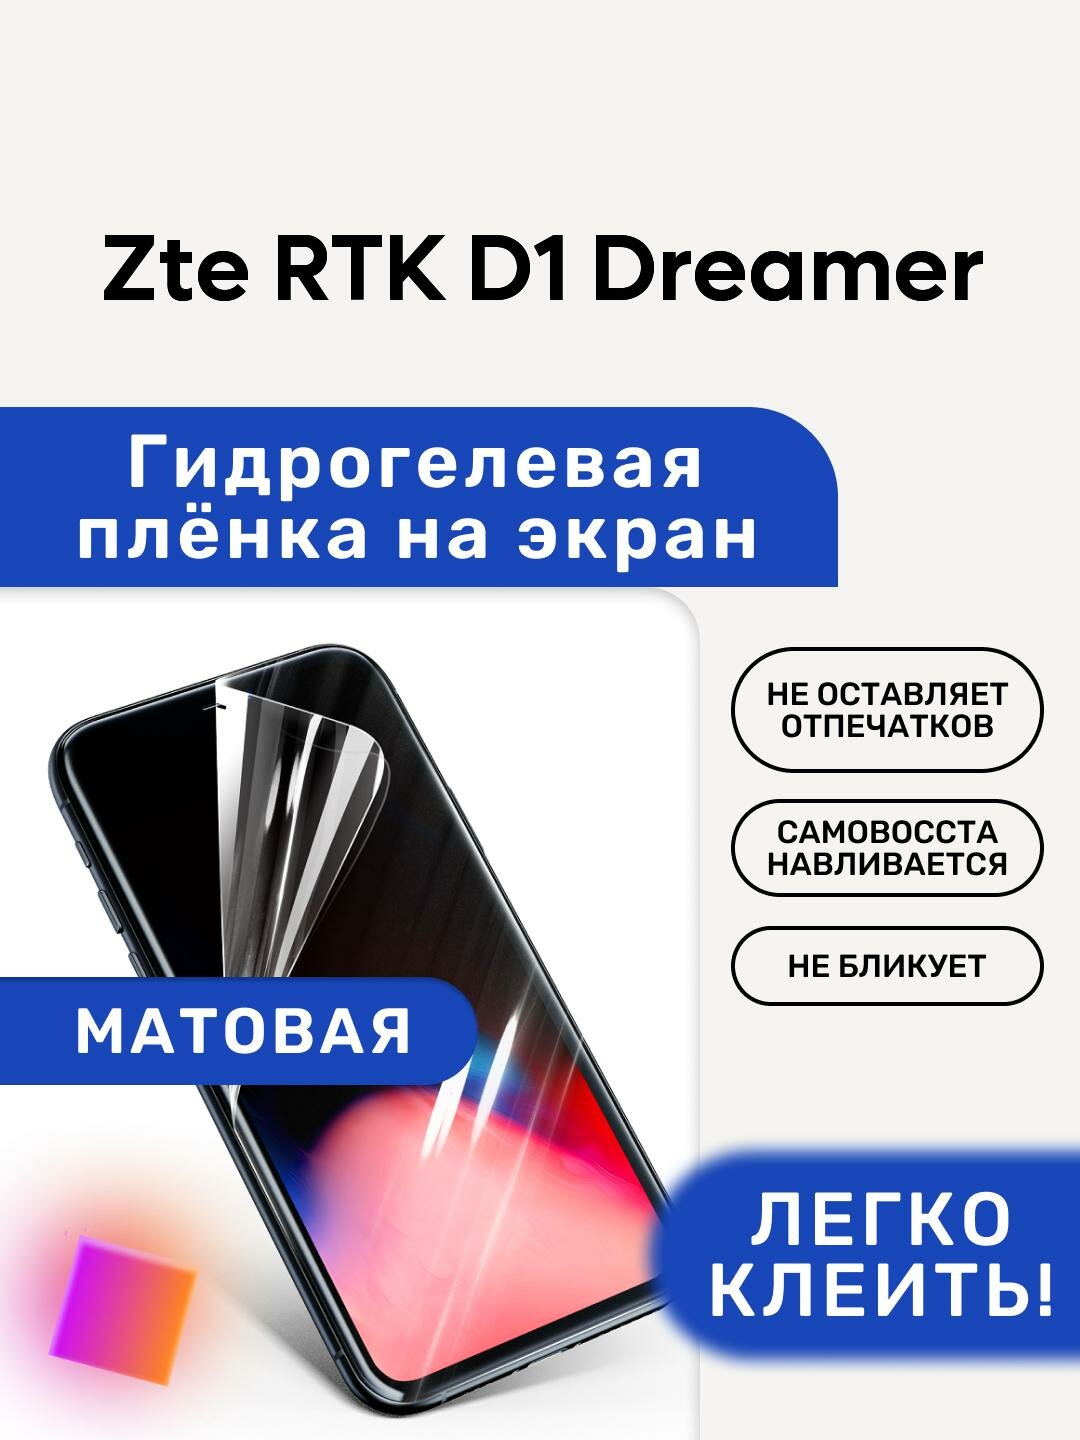 Матовая Гидрогелевая плёнка, полиуретановая, защита экрана Zte RTK D1 Dreamer